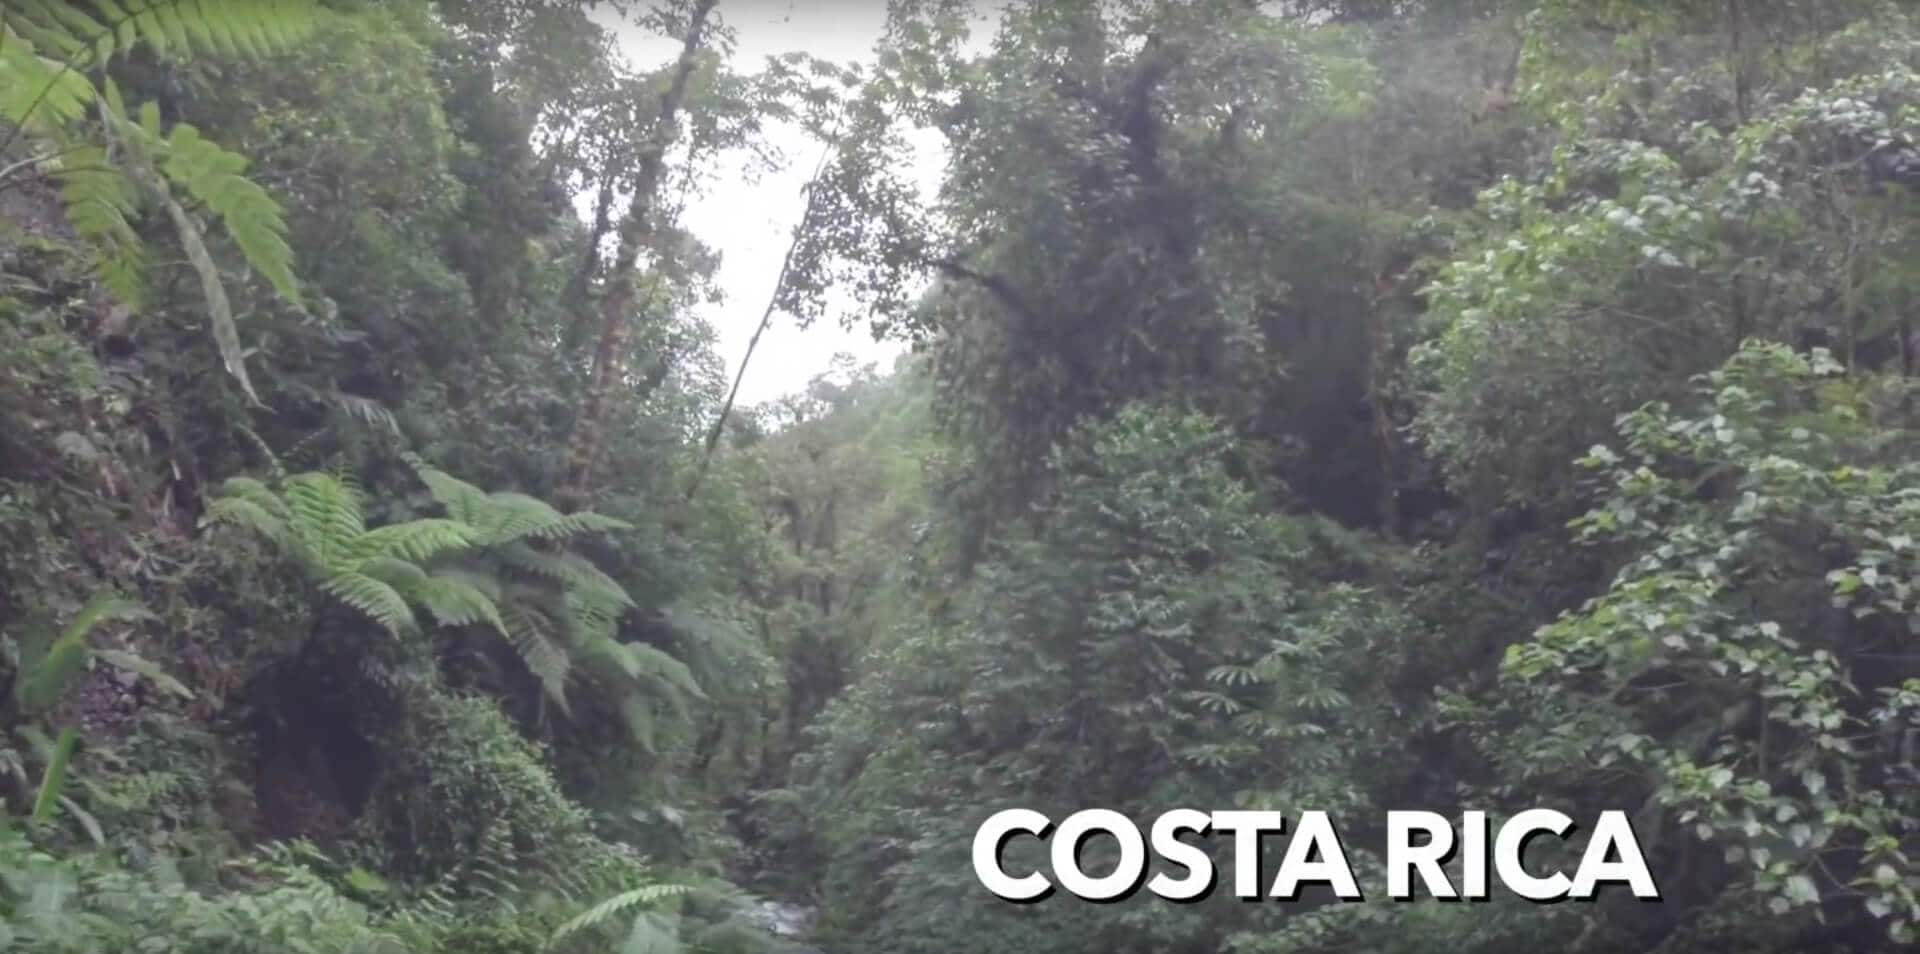 Costa Rica - Pure Life Adventure in Costa Rica